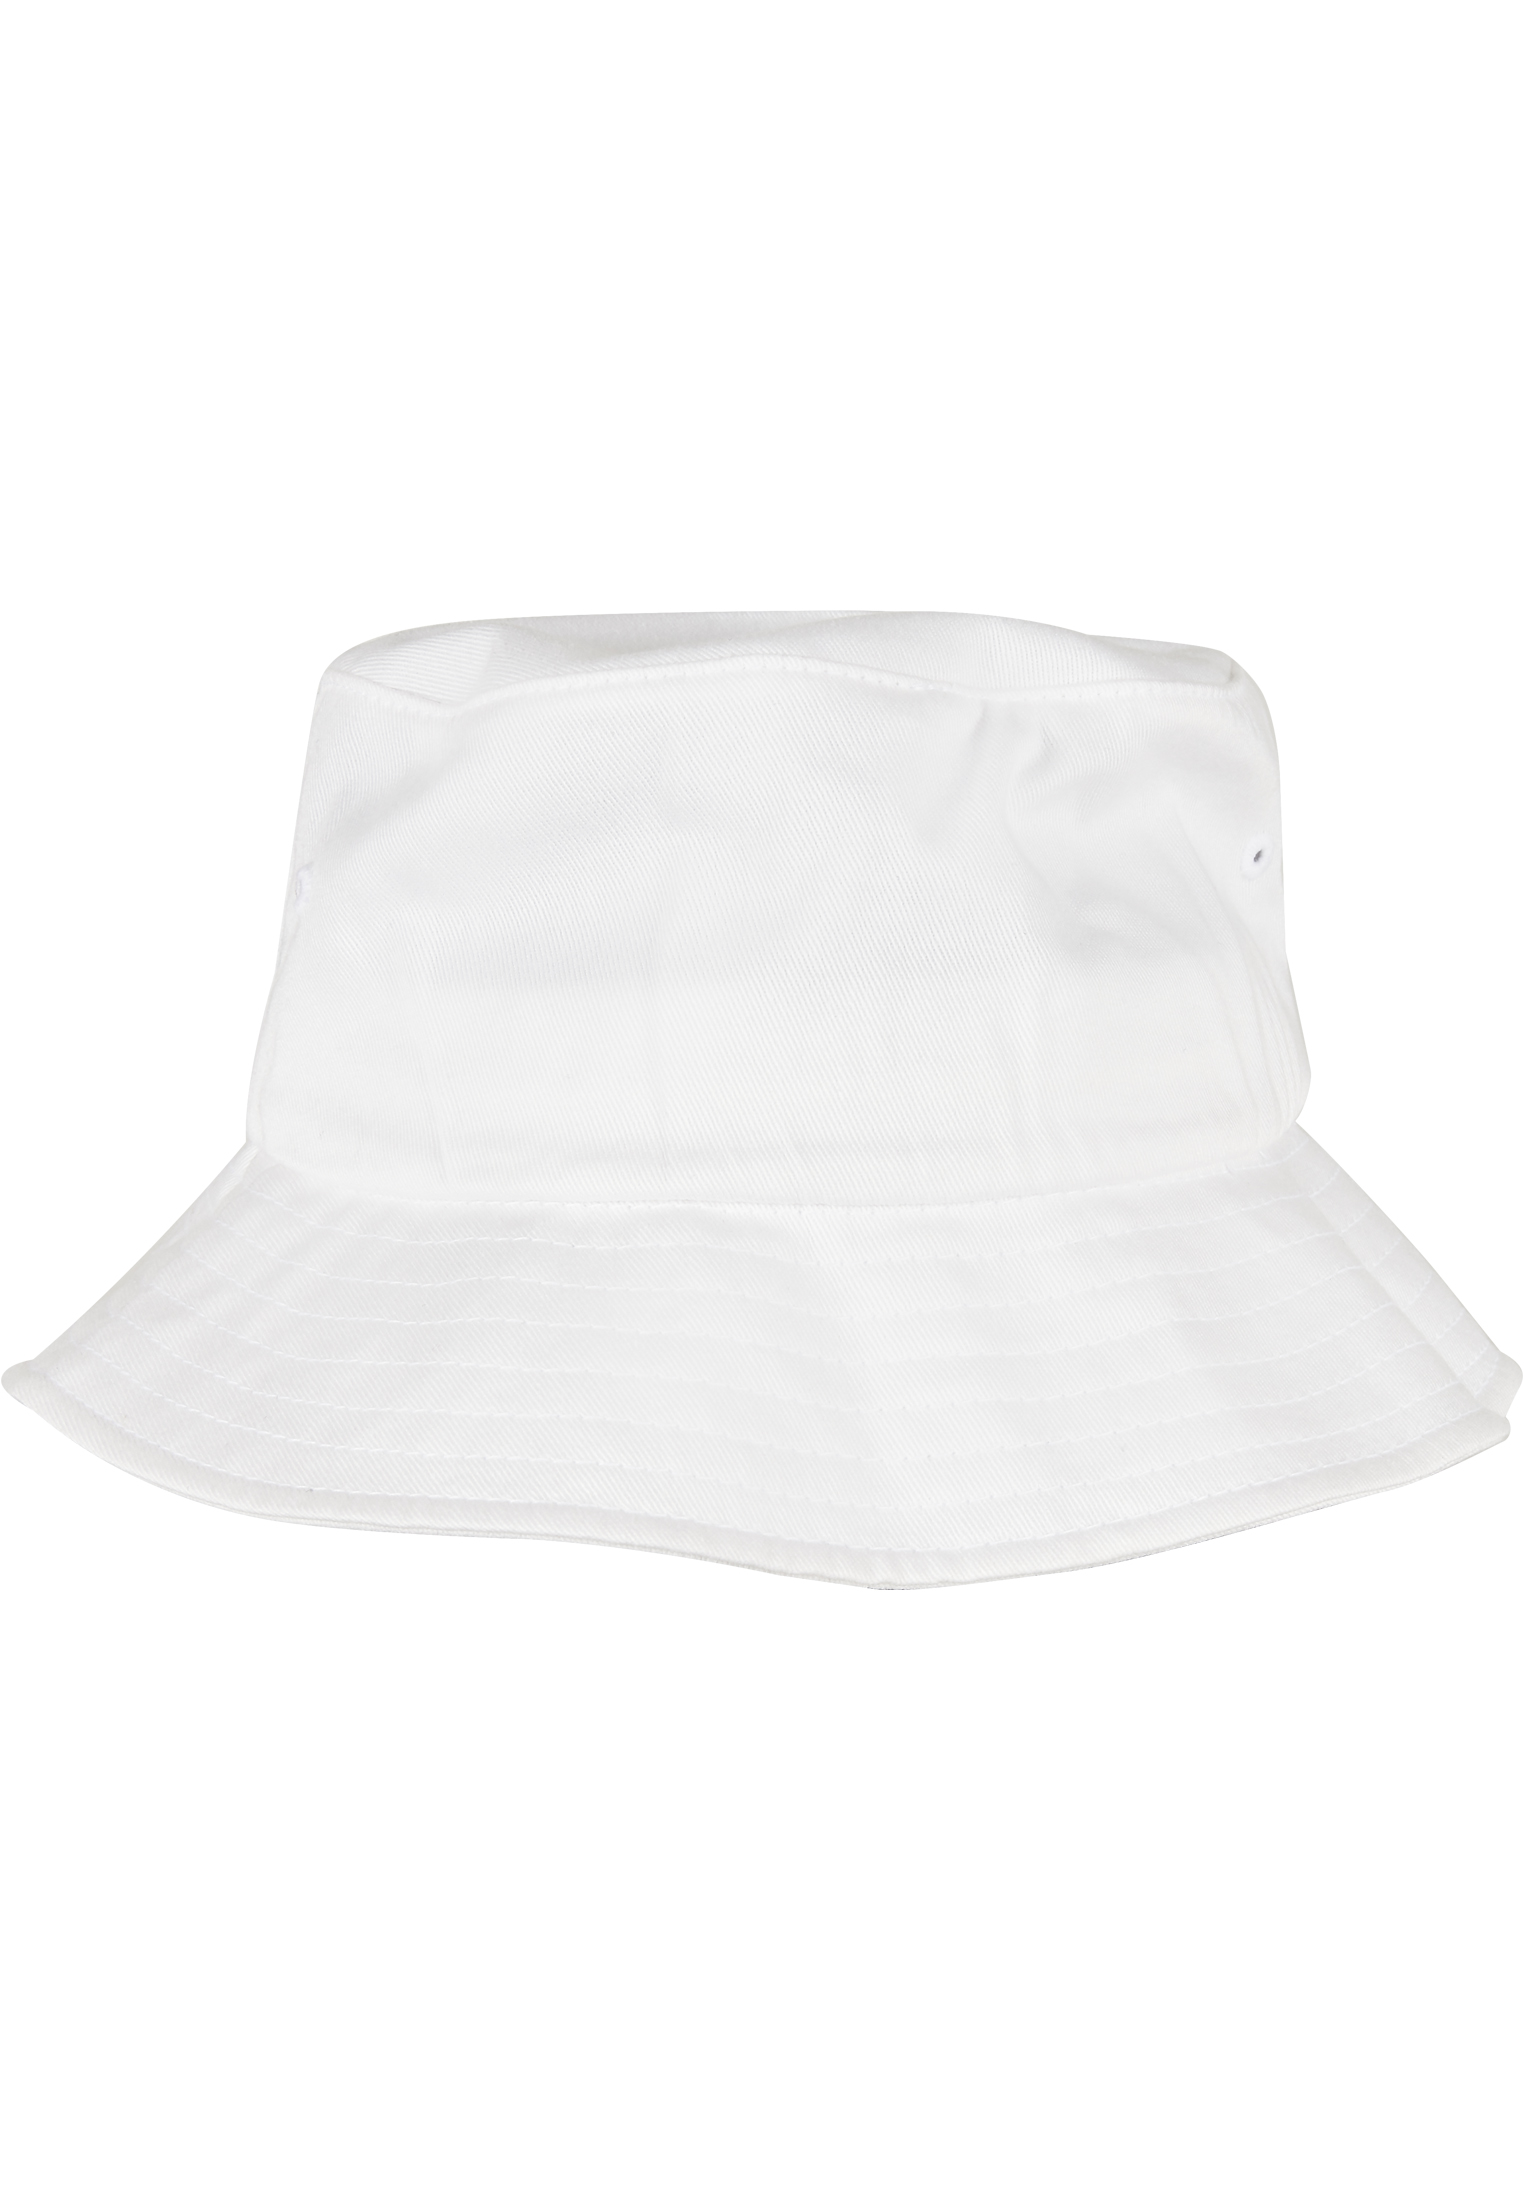 Nachhaltig Organic Cotton Bucket Hat in Farbe white